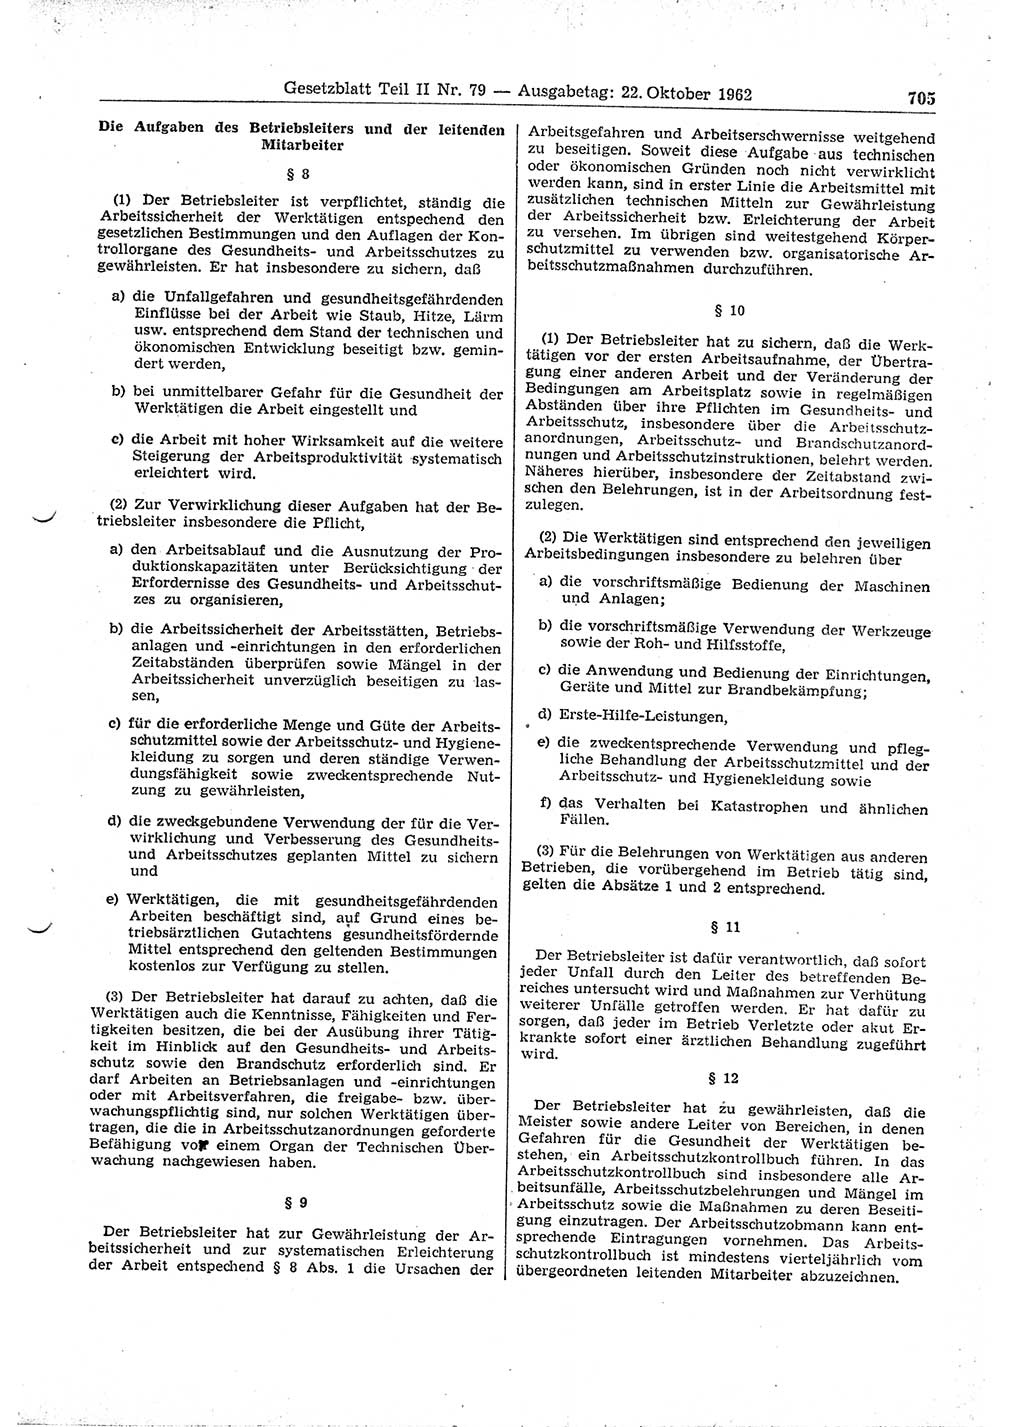 Gesetzblatt (GBl.) der Deutschen Demokratischen Republik (DDR) Teil ⅠⅠ 1962, Seite 705 (GBl. DDR ⅠⅠ 1962, S. 705)